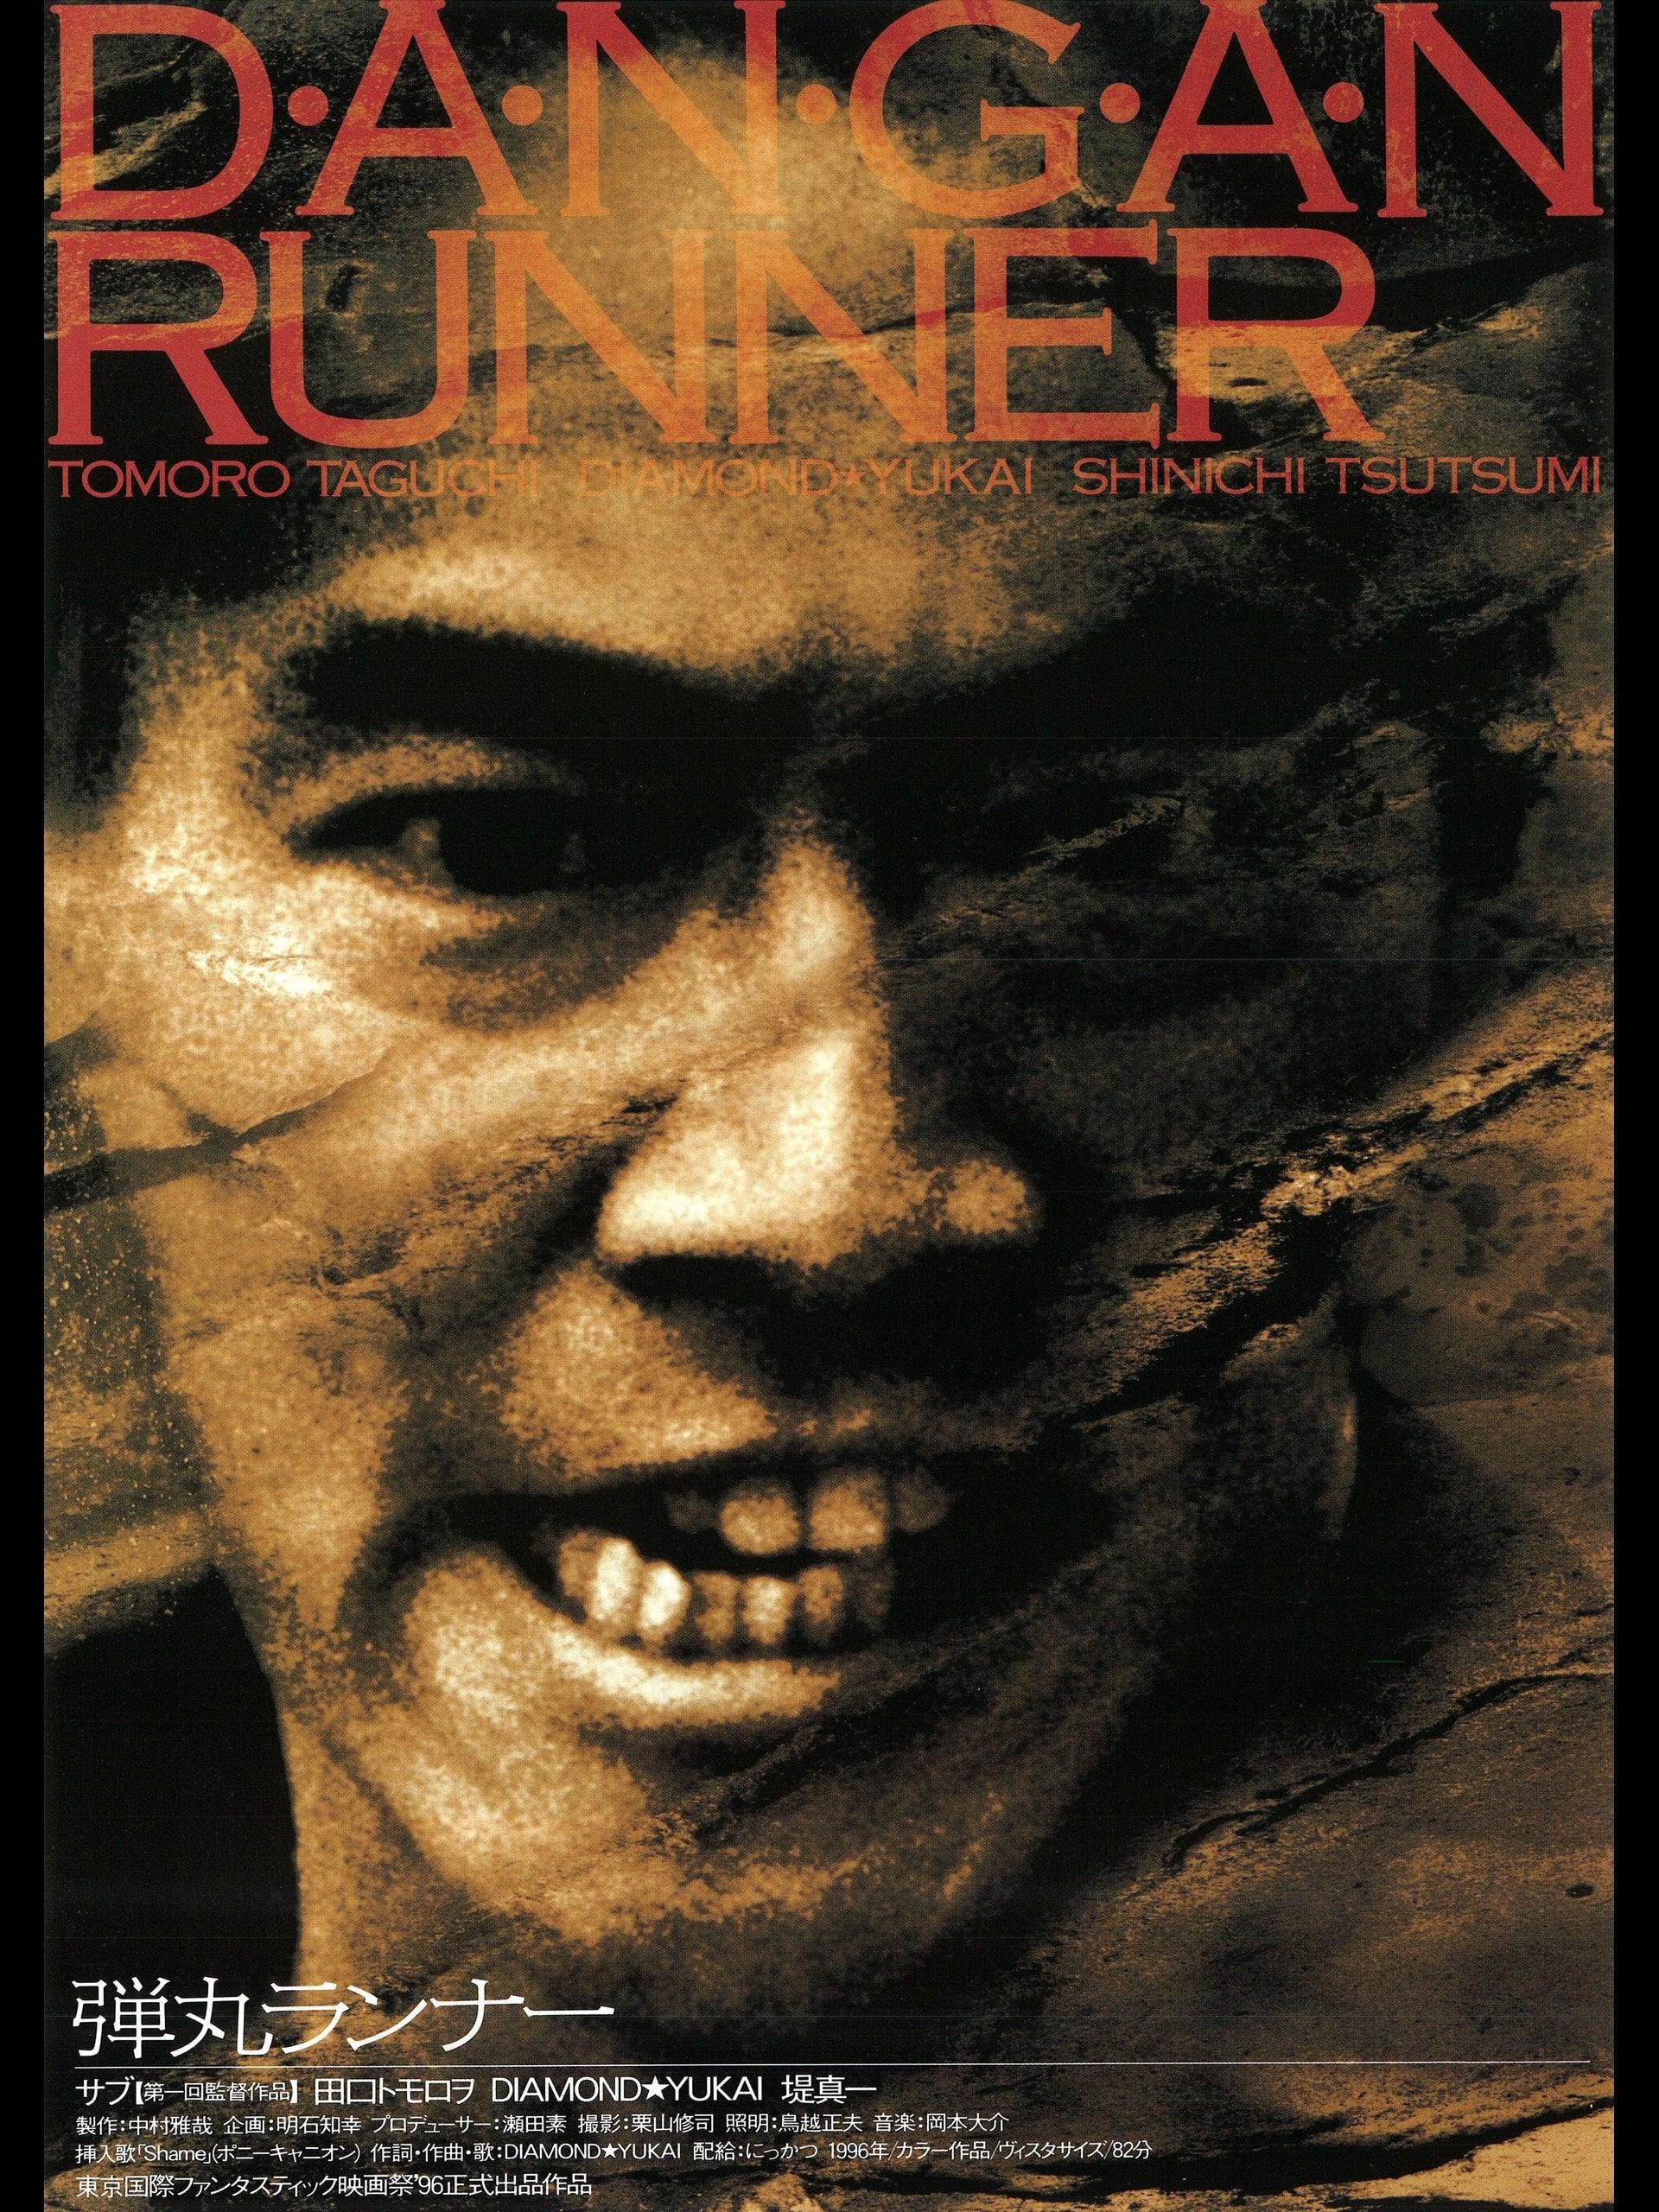 Dangan Runner poster